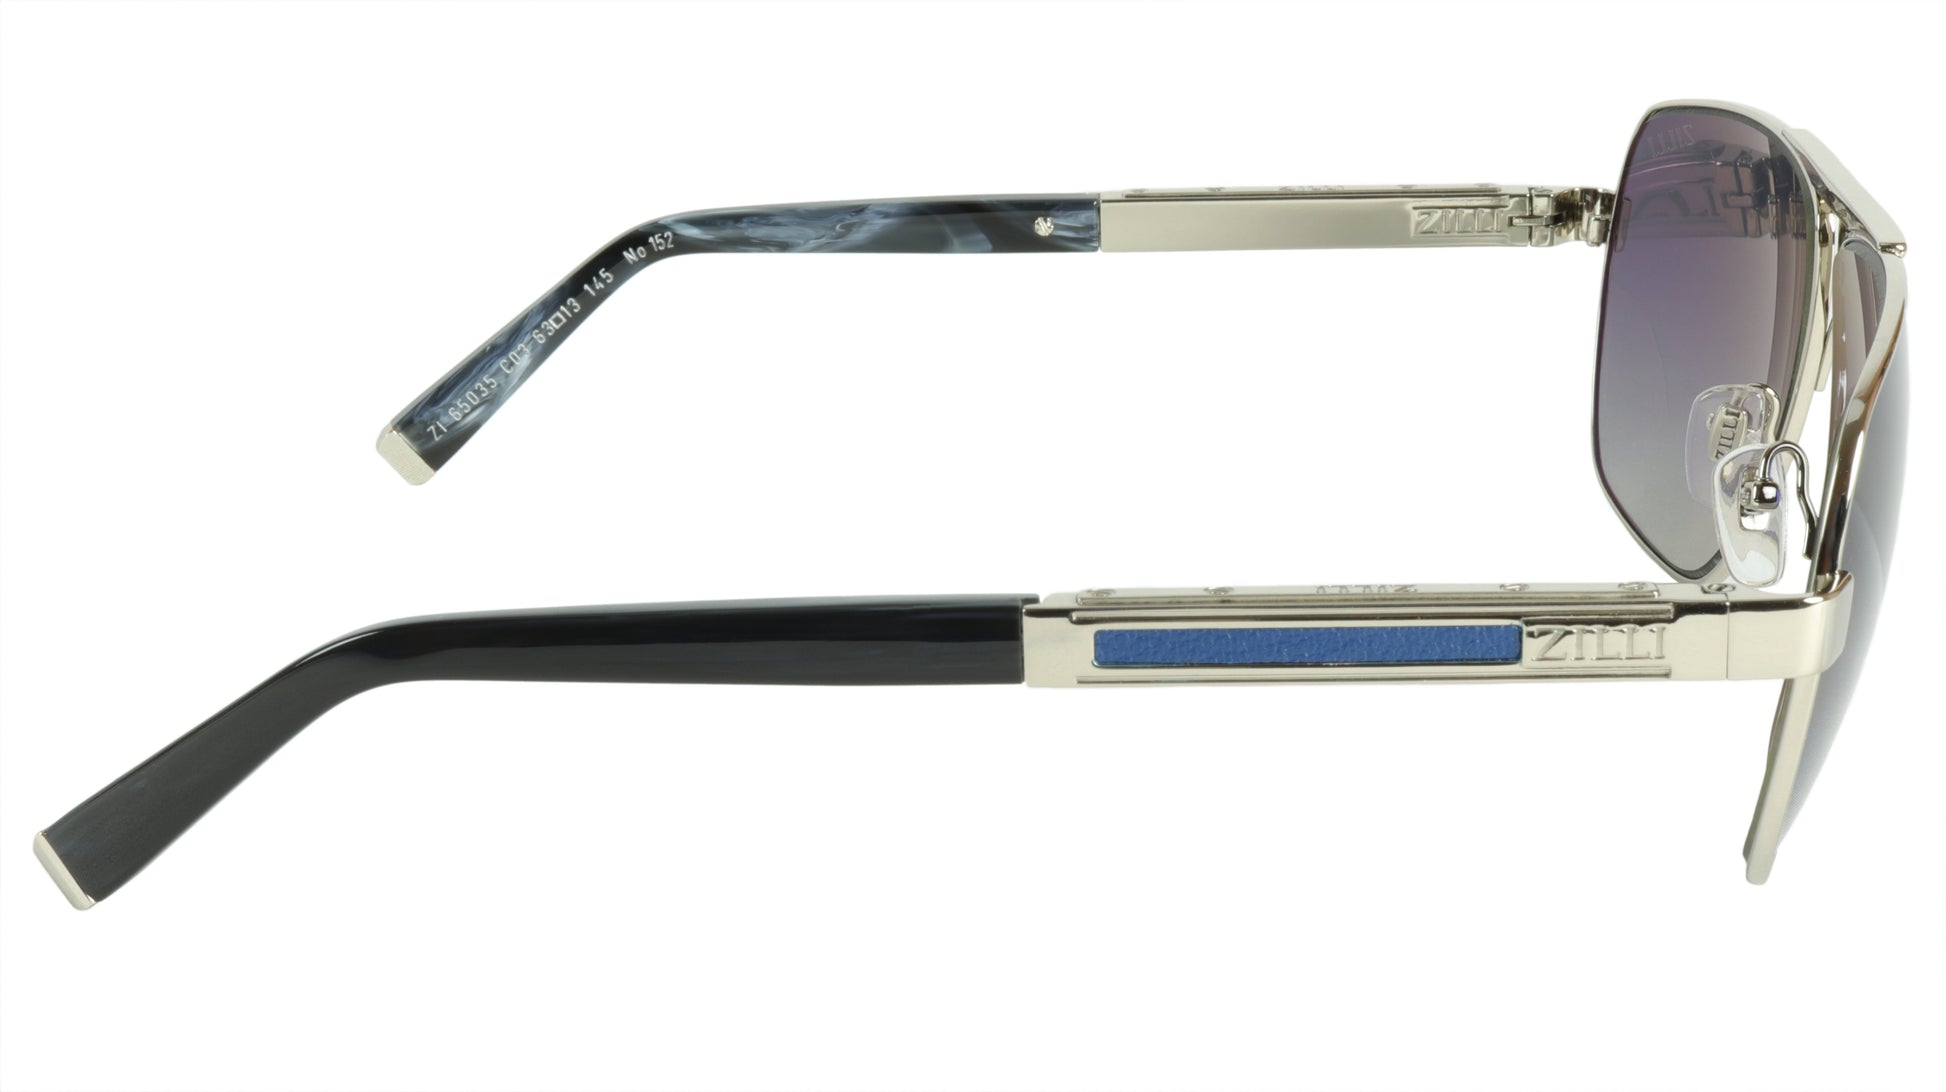 ZILLI Sunglasses Titanium Acetate Leather Polarized France Handmade ZI 65035 C03 - Frame Bay